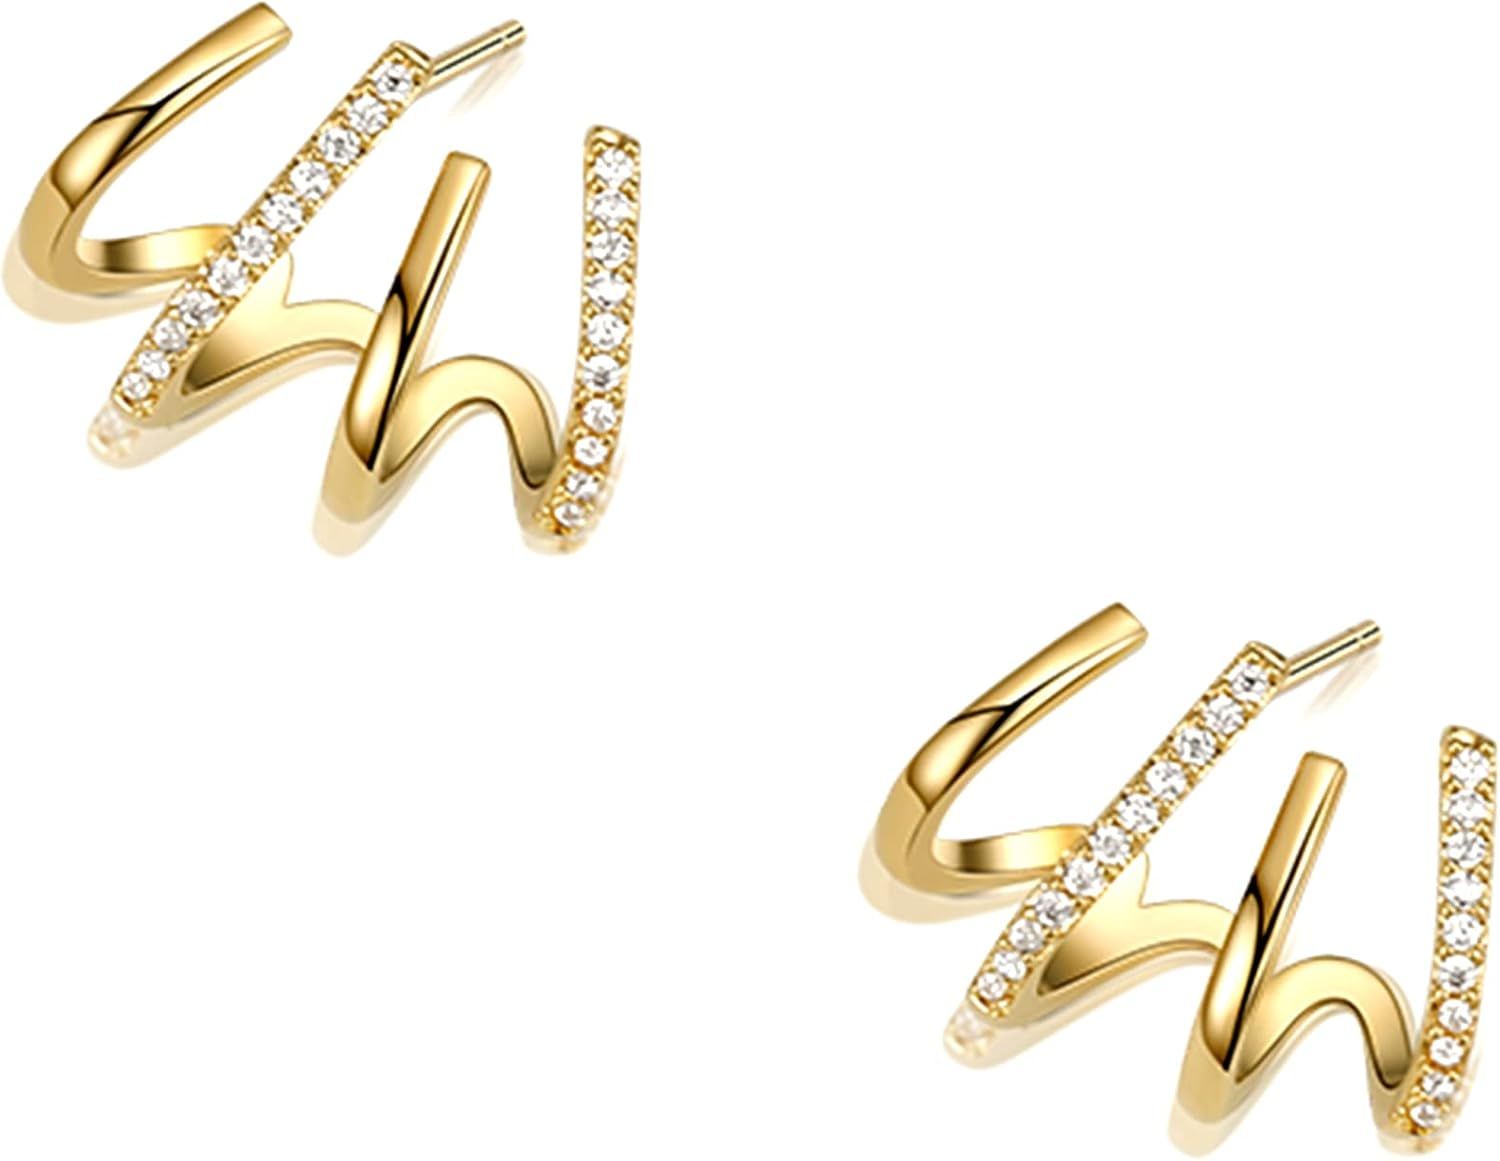 Claw Earring Cuff Zircon Needle Stud Ear Cuffs Gold Claw Earrings for Women Dainty Minimalist Hug... | Amazon (US)